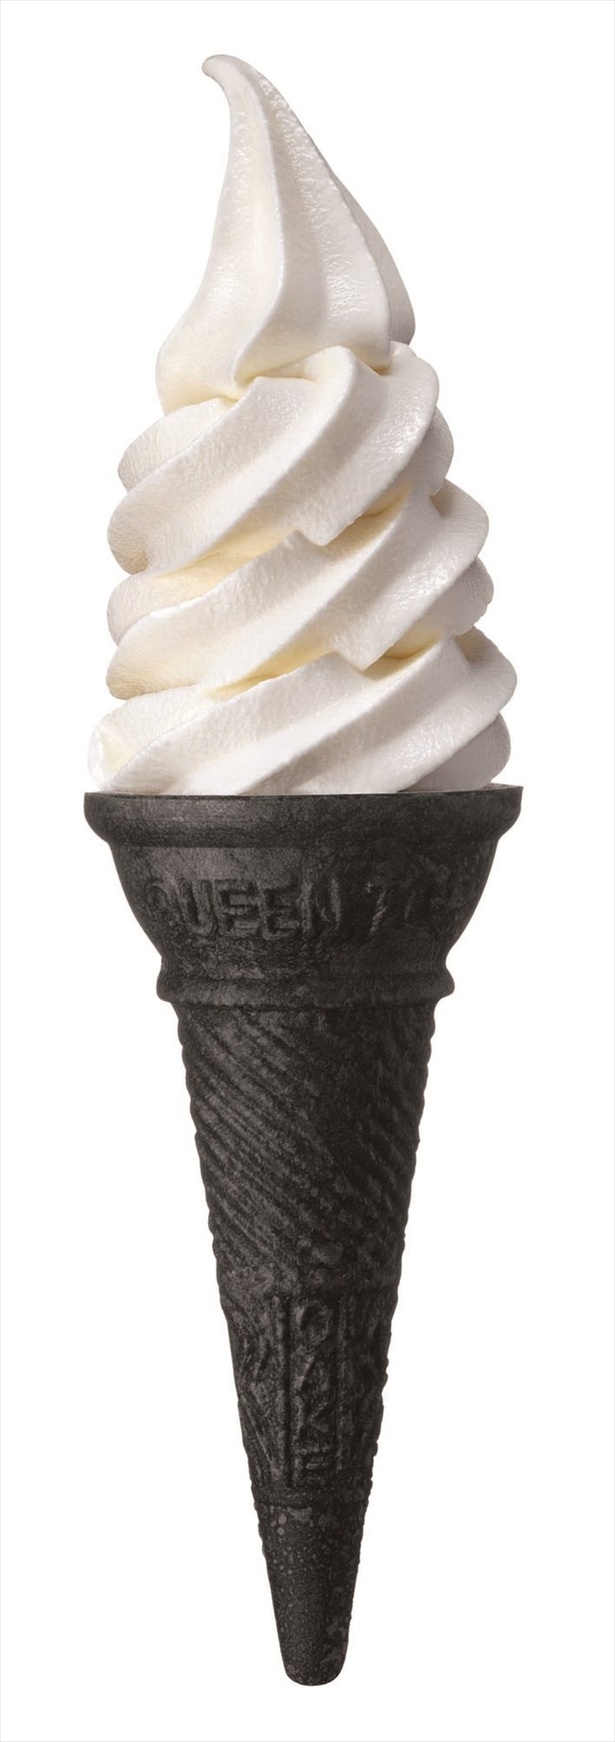 画像多数 東京ソラマチアイスクリーム総選挙 注目アイスを一挙紹介 ウォーカープラス